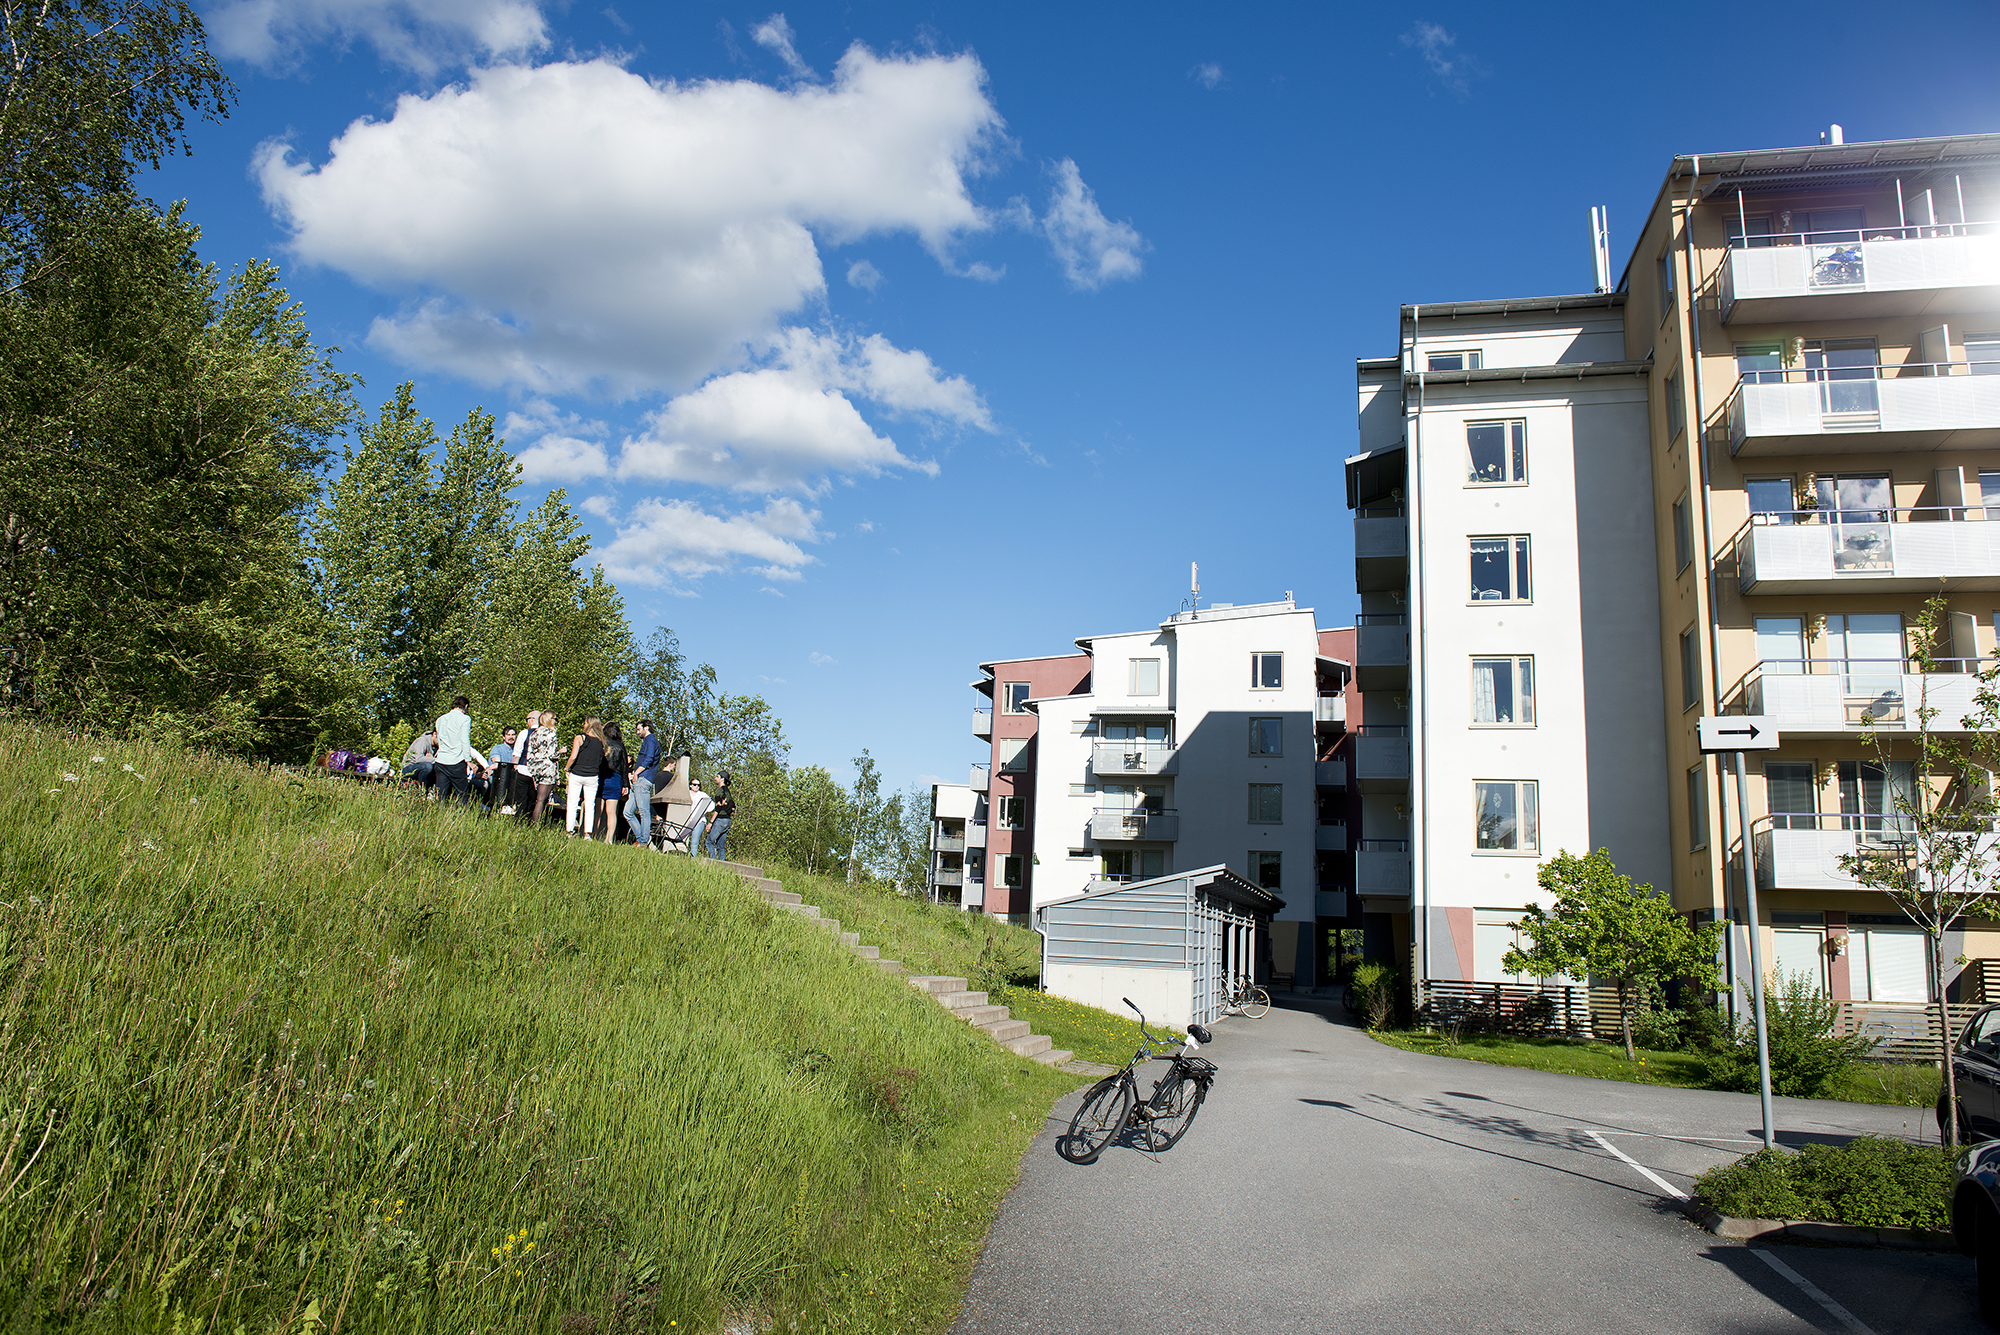 Sankta Katarina studentbostäder på Studievägen 14 och 16, med grillplats på bakgården.